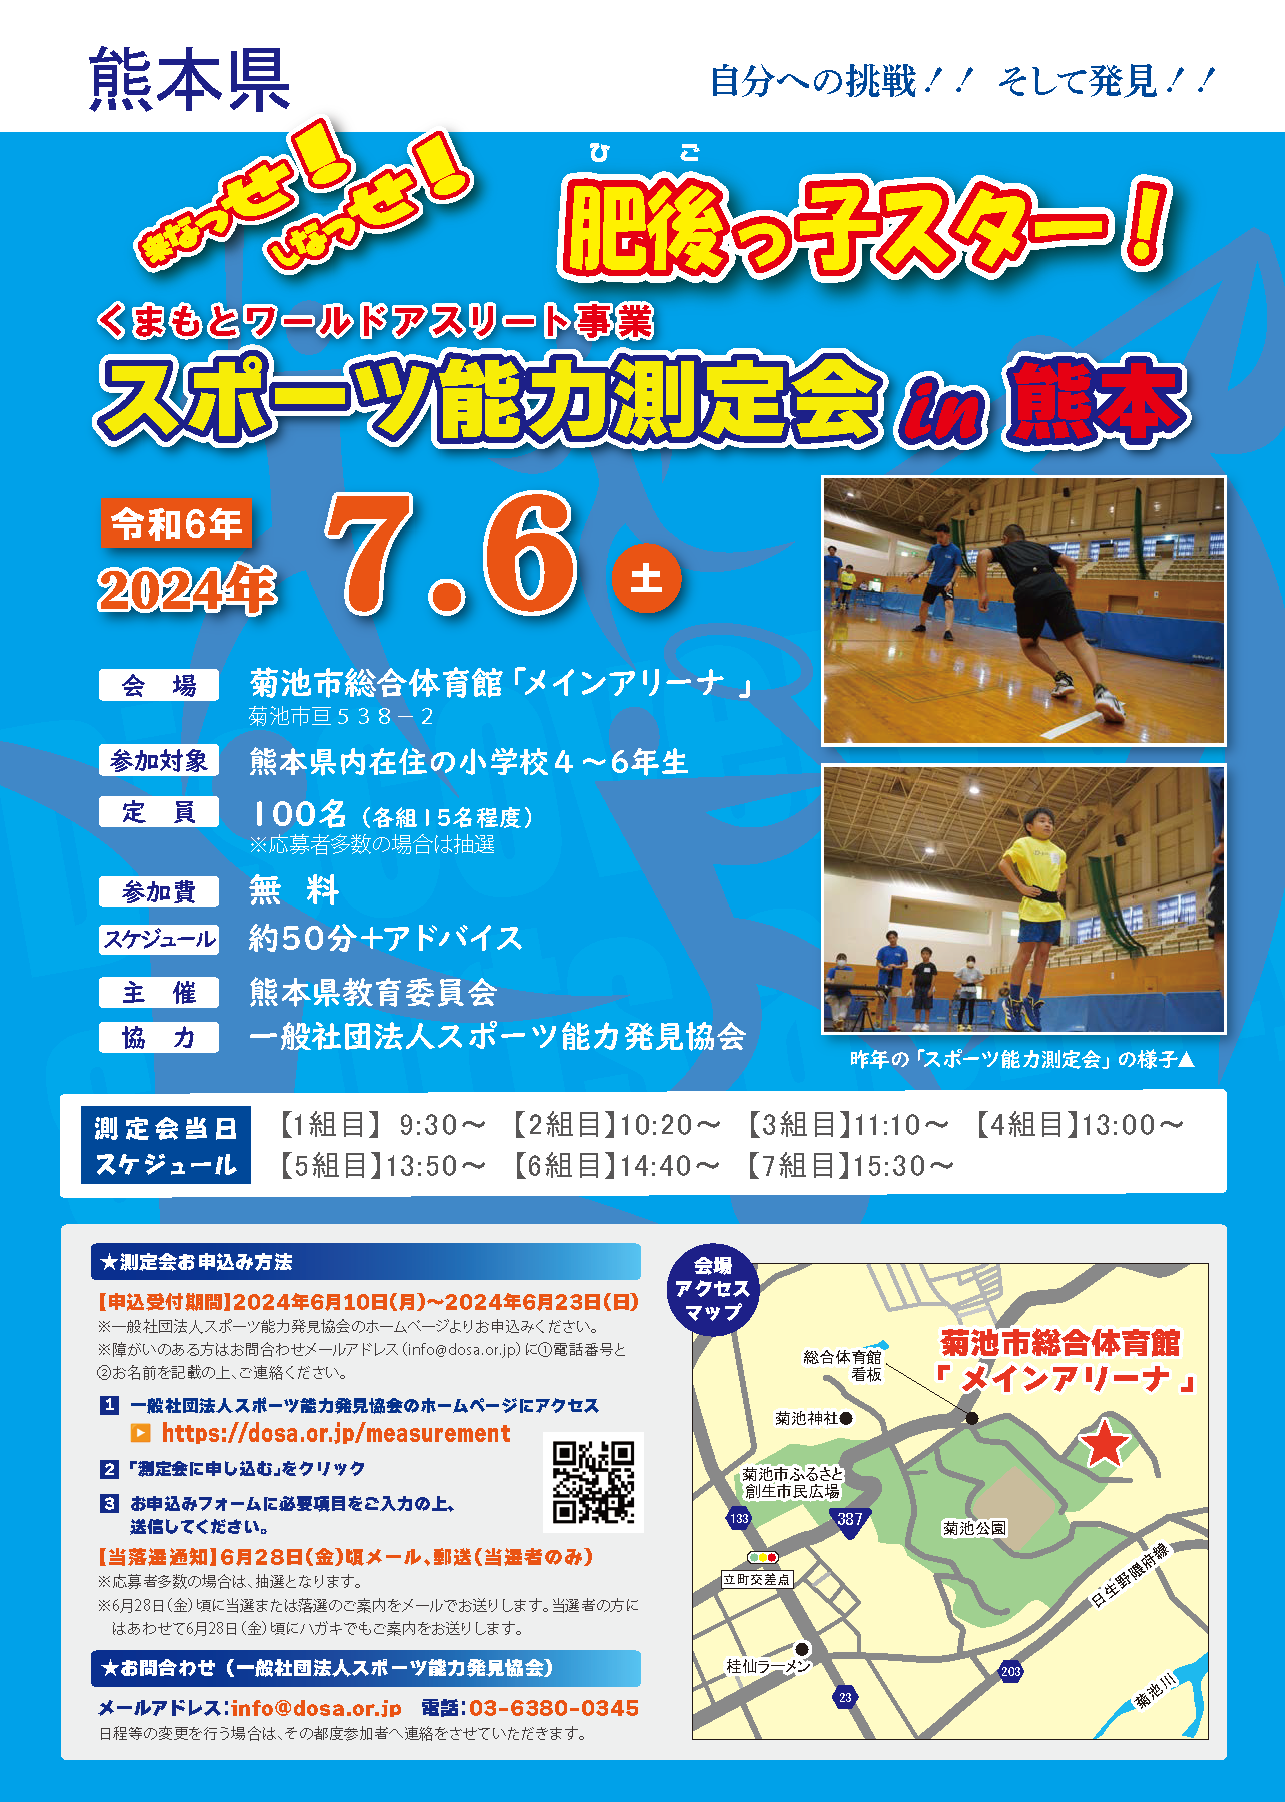 2024/7/6 スポーツ能力測定会 in 熊本を開催します。